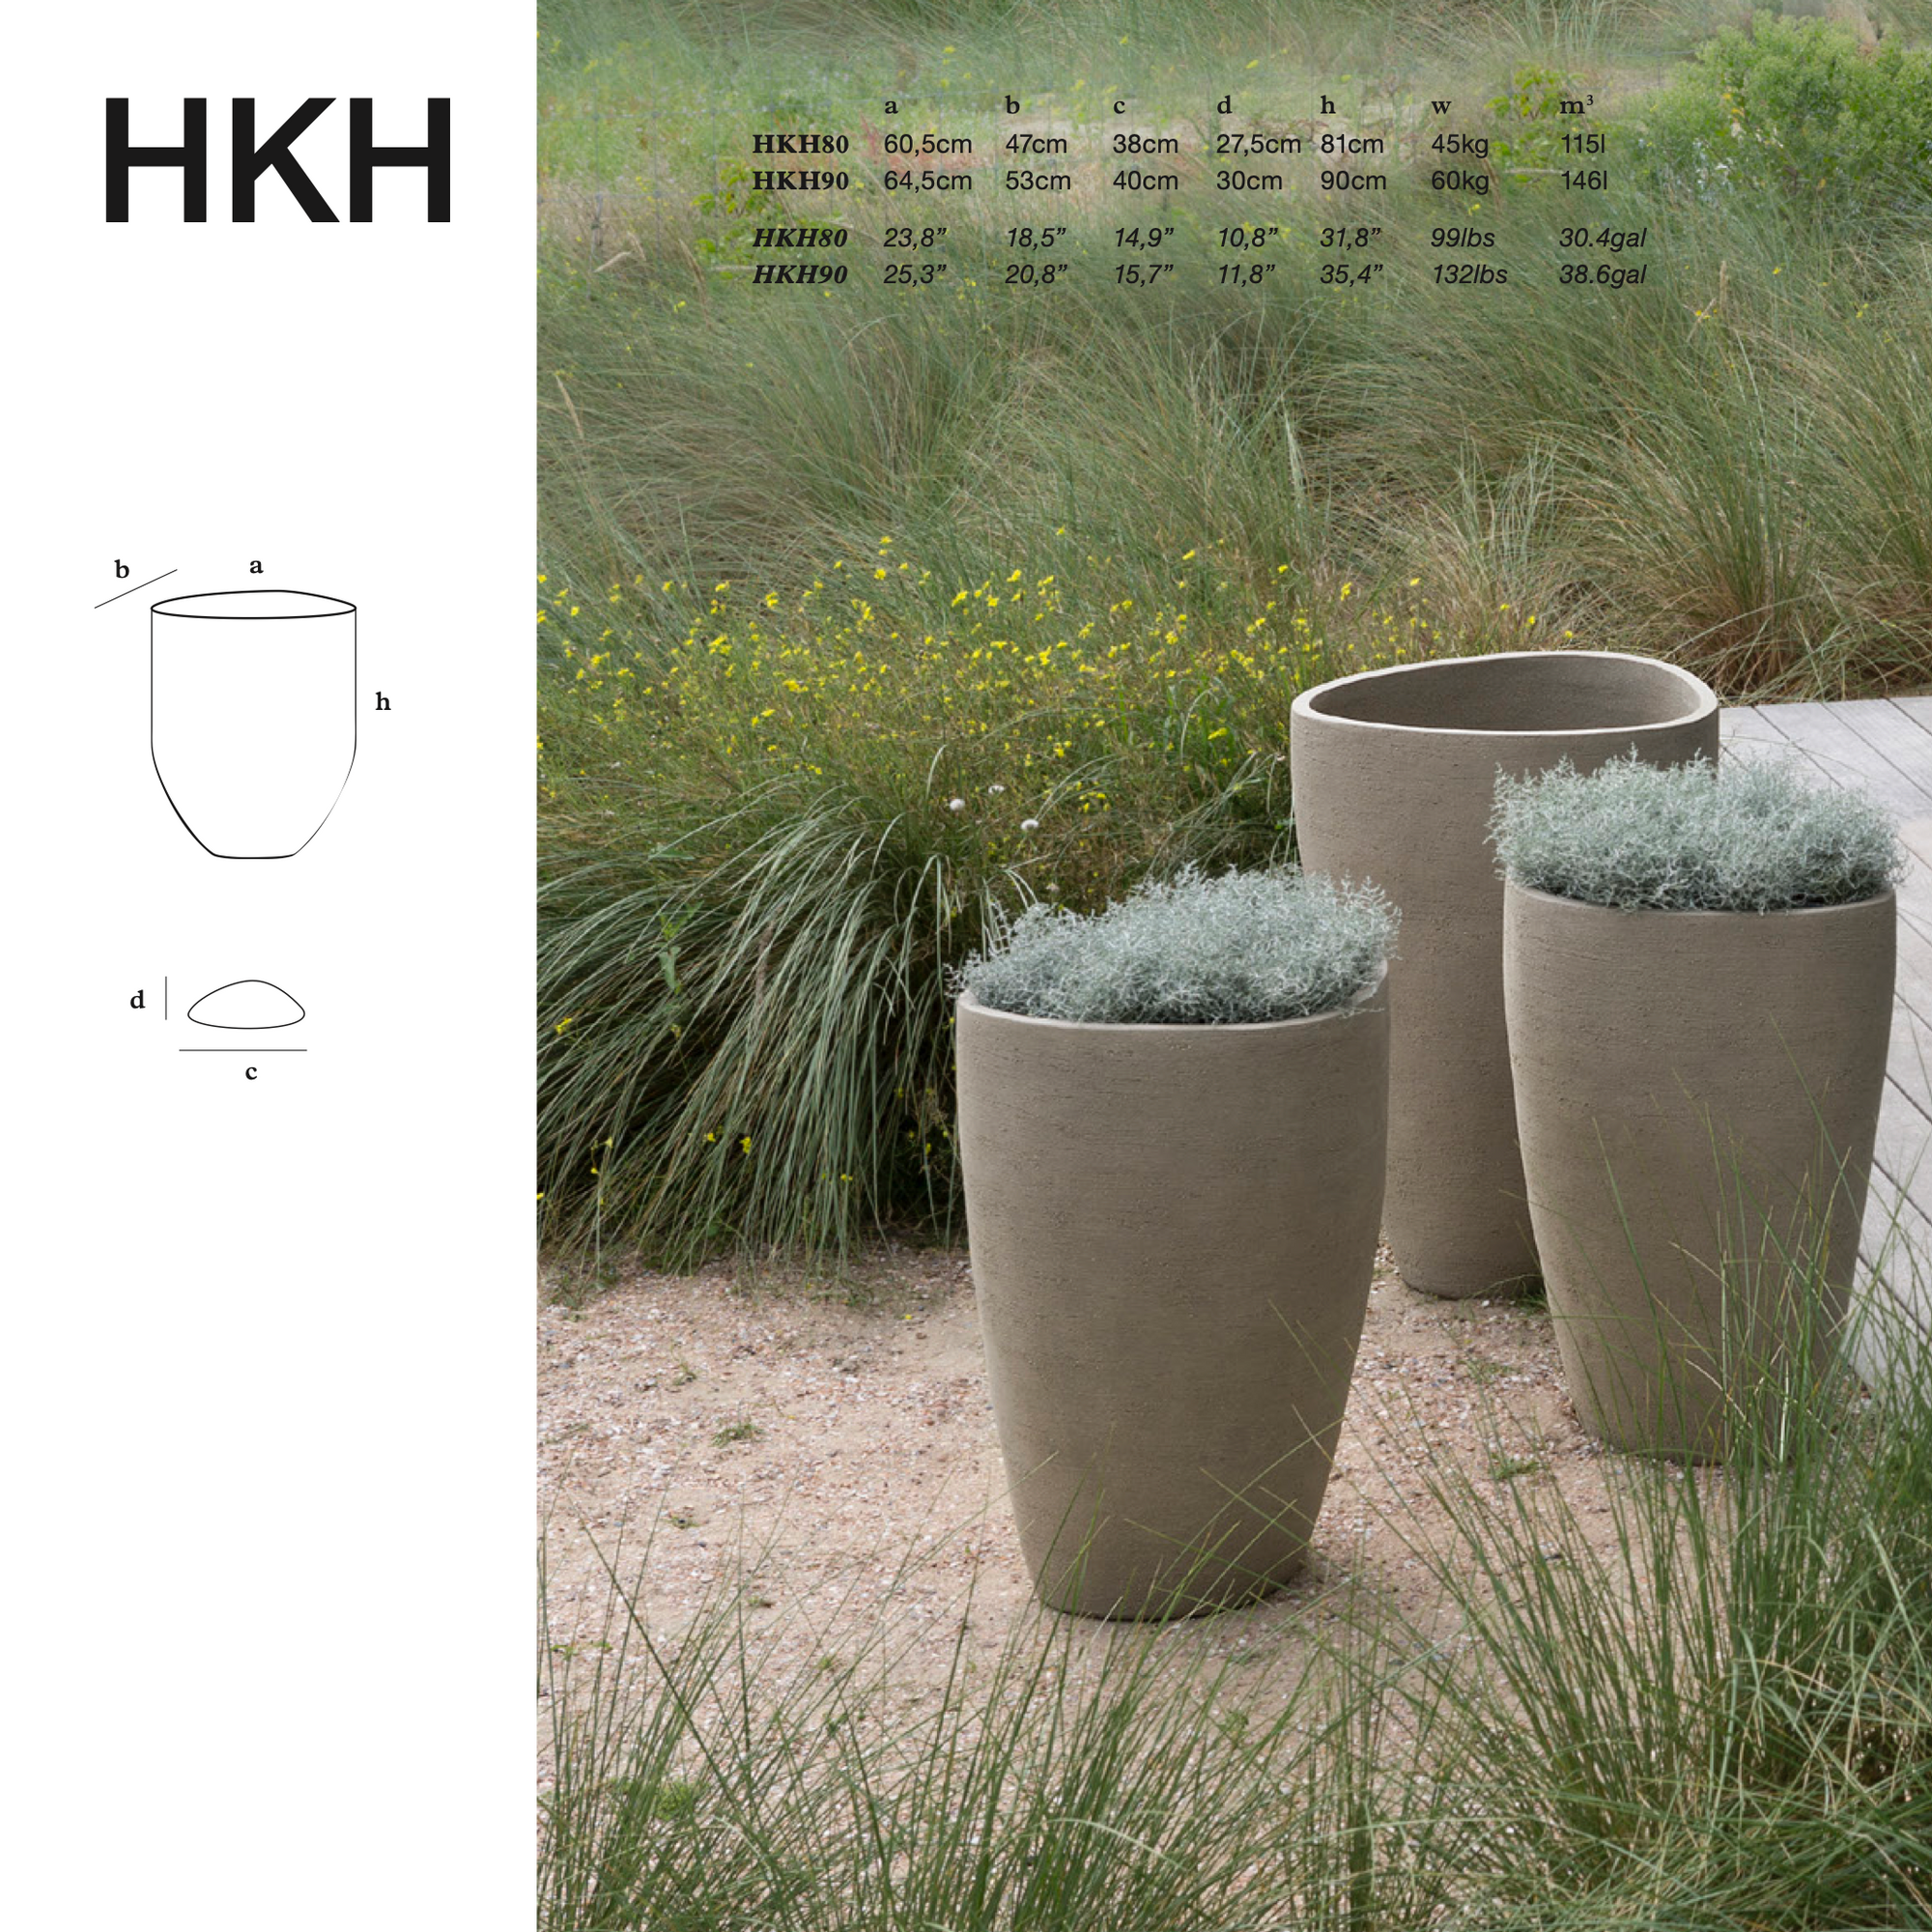 Verleihen Sie Ihrem Ambiente mit dem Model HKH von Atelier Vierkant einen Hauch von Natur – einzigartiges Design für Garten und Innenbereich. Hier erhältlich!